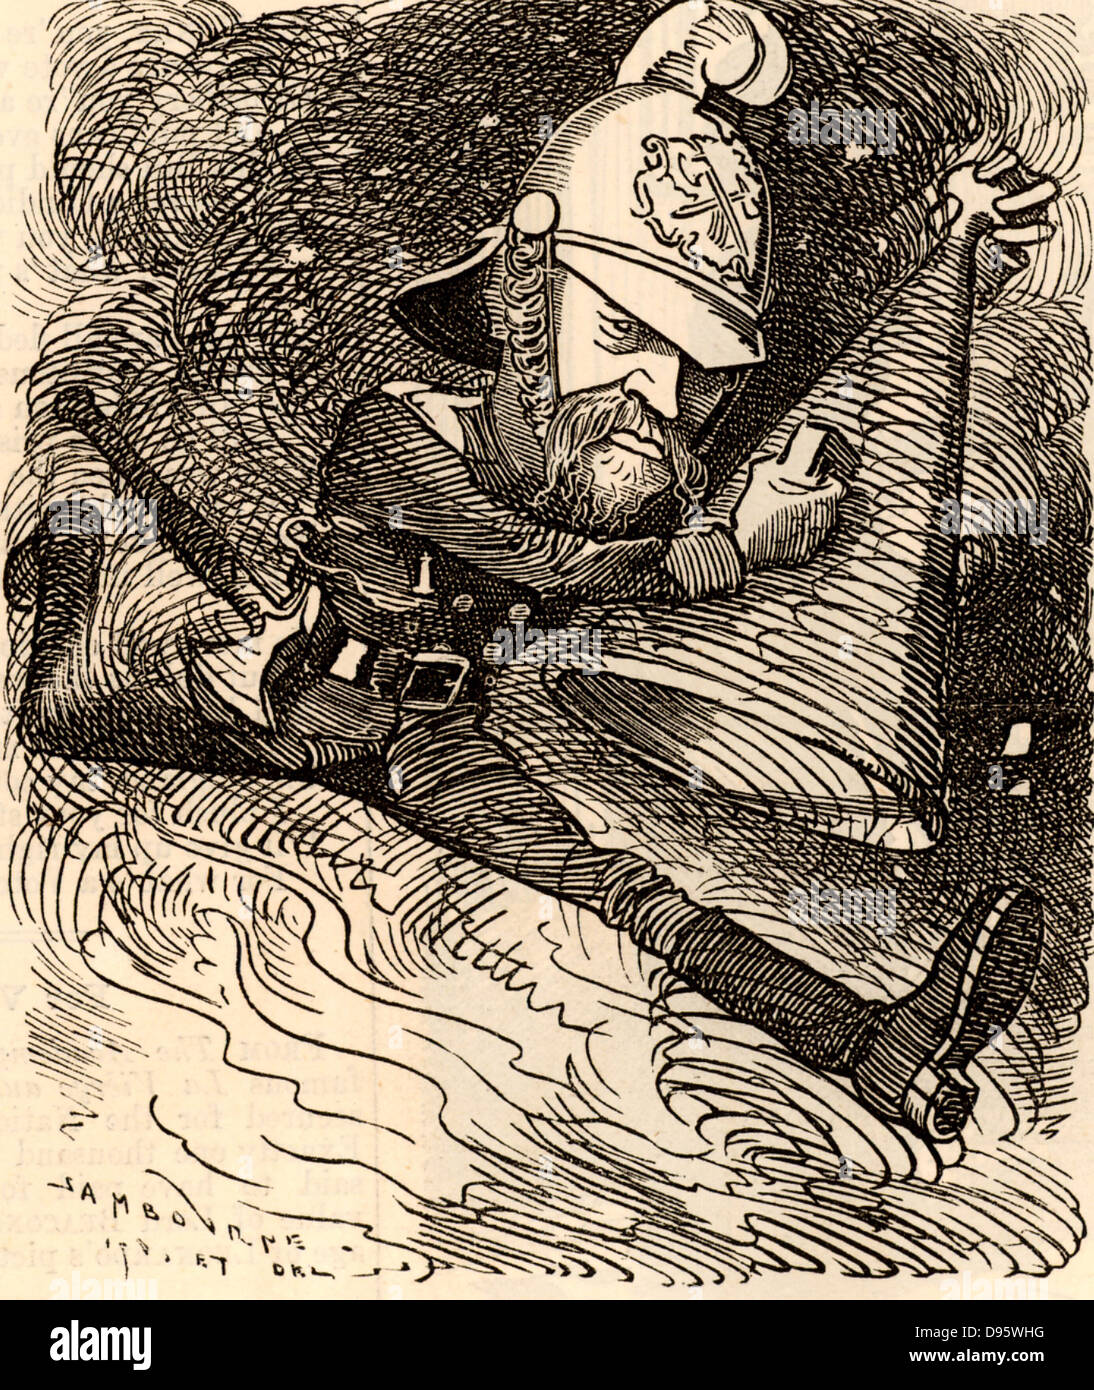 Eyre Massey Shaw (1830-1908) Irischer Soldat, der in der britischen Armee diente. Allgemein als 'Captain Shaw', er war Gründer und Superintendant der Metropolitan (jetzt London) Feuerwehr 1861-1891 bekannt. In Gilbert und Sullivan's Light Opera' Iolanthe' die Fee fragt sich, ob Kapitän Shaw's "Brigade mit kaltem cascade' konnte ihre Liebe zu stillen. Cartoon von Edward Linley Sambourne in der Punch Fancy Porträts aus der Serie 'Lochen' (London, 22. Januar 1881). Stockfoto